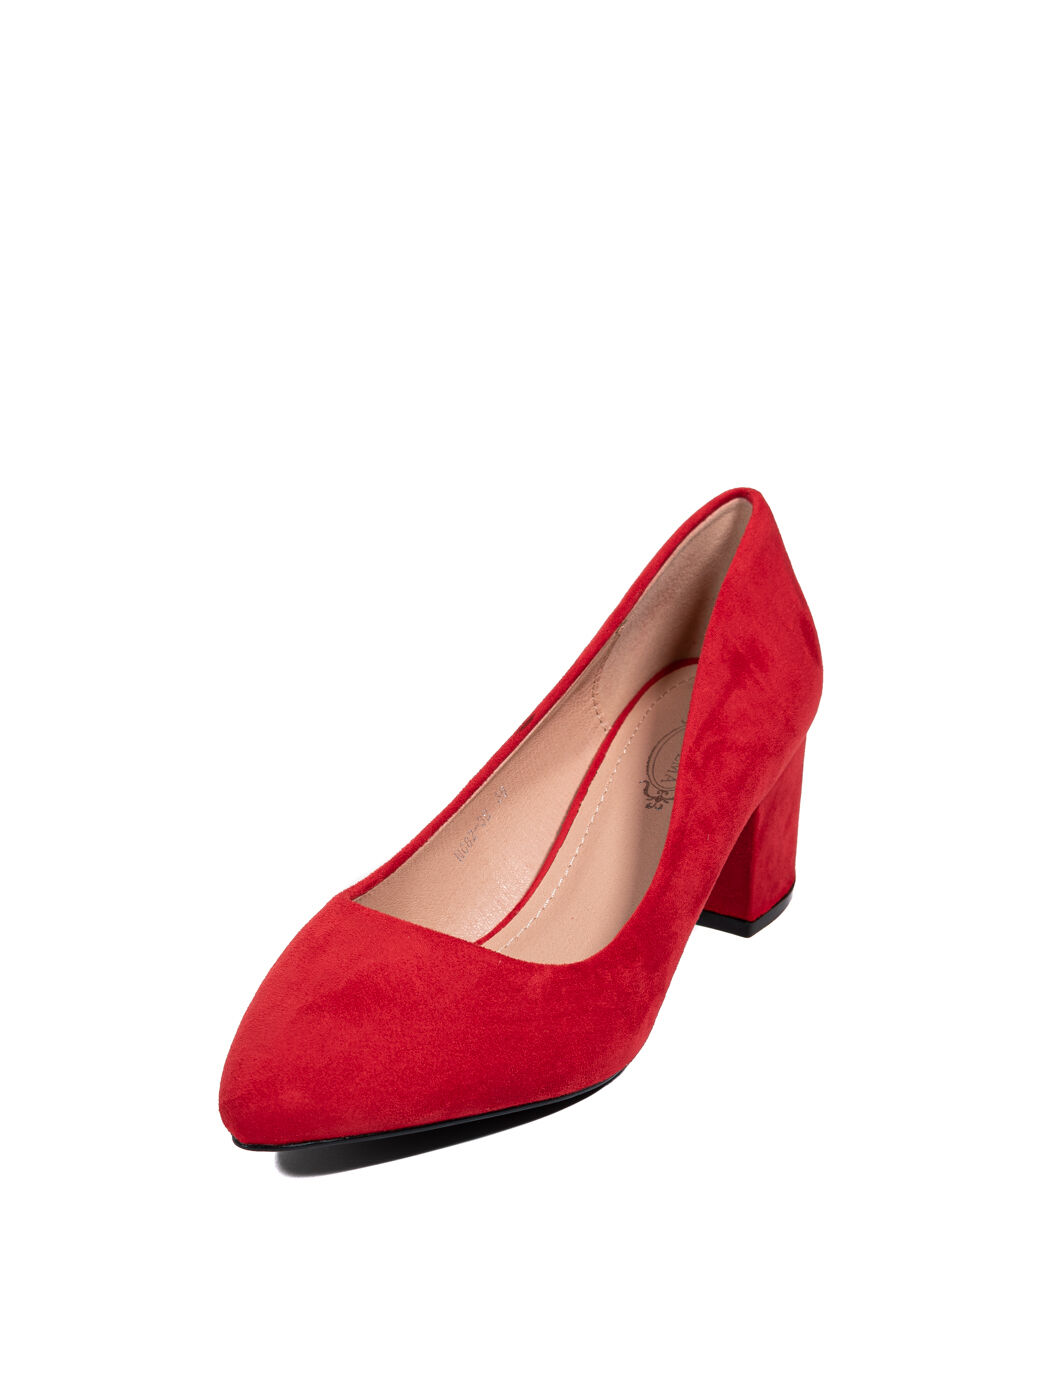 Туфли женские красные экозамша каблук устойчивый демисезон от производителя BM вид 0